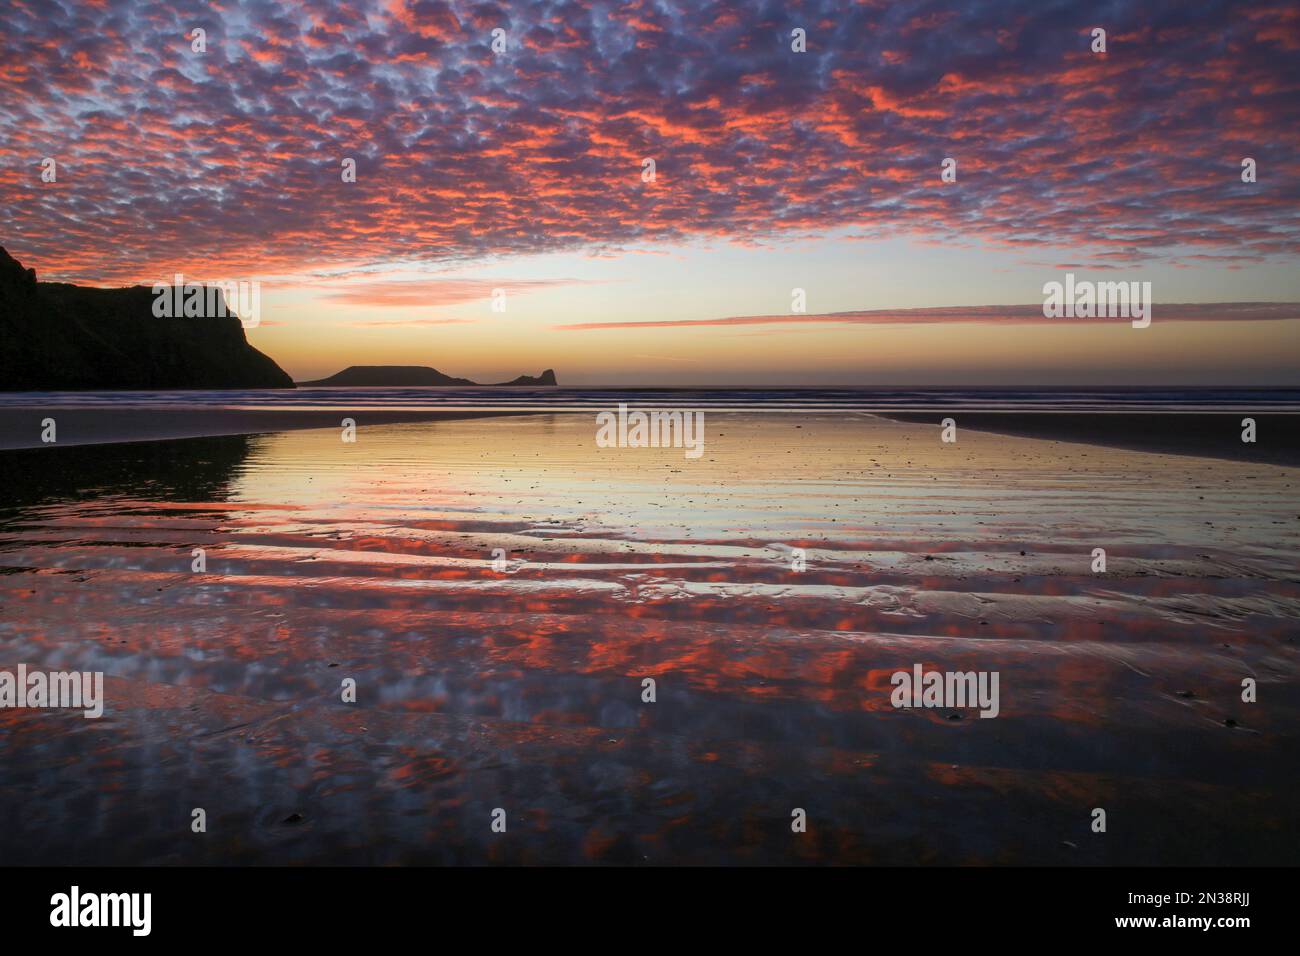 Formation de nuages de maquereaux au coucher du soleil sur la baie de Rhossili, sur la péninsule de Gower, à Swansea, au sud du pays de Galles, au Royaume-Uni Banque D'Images